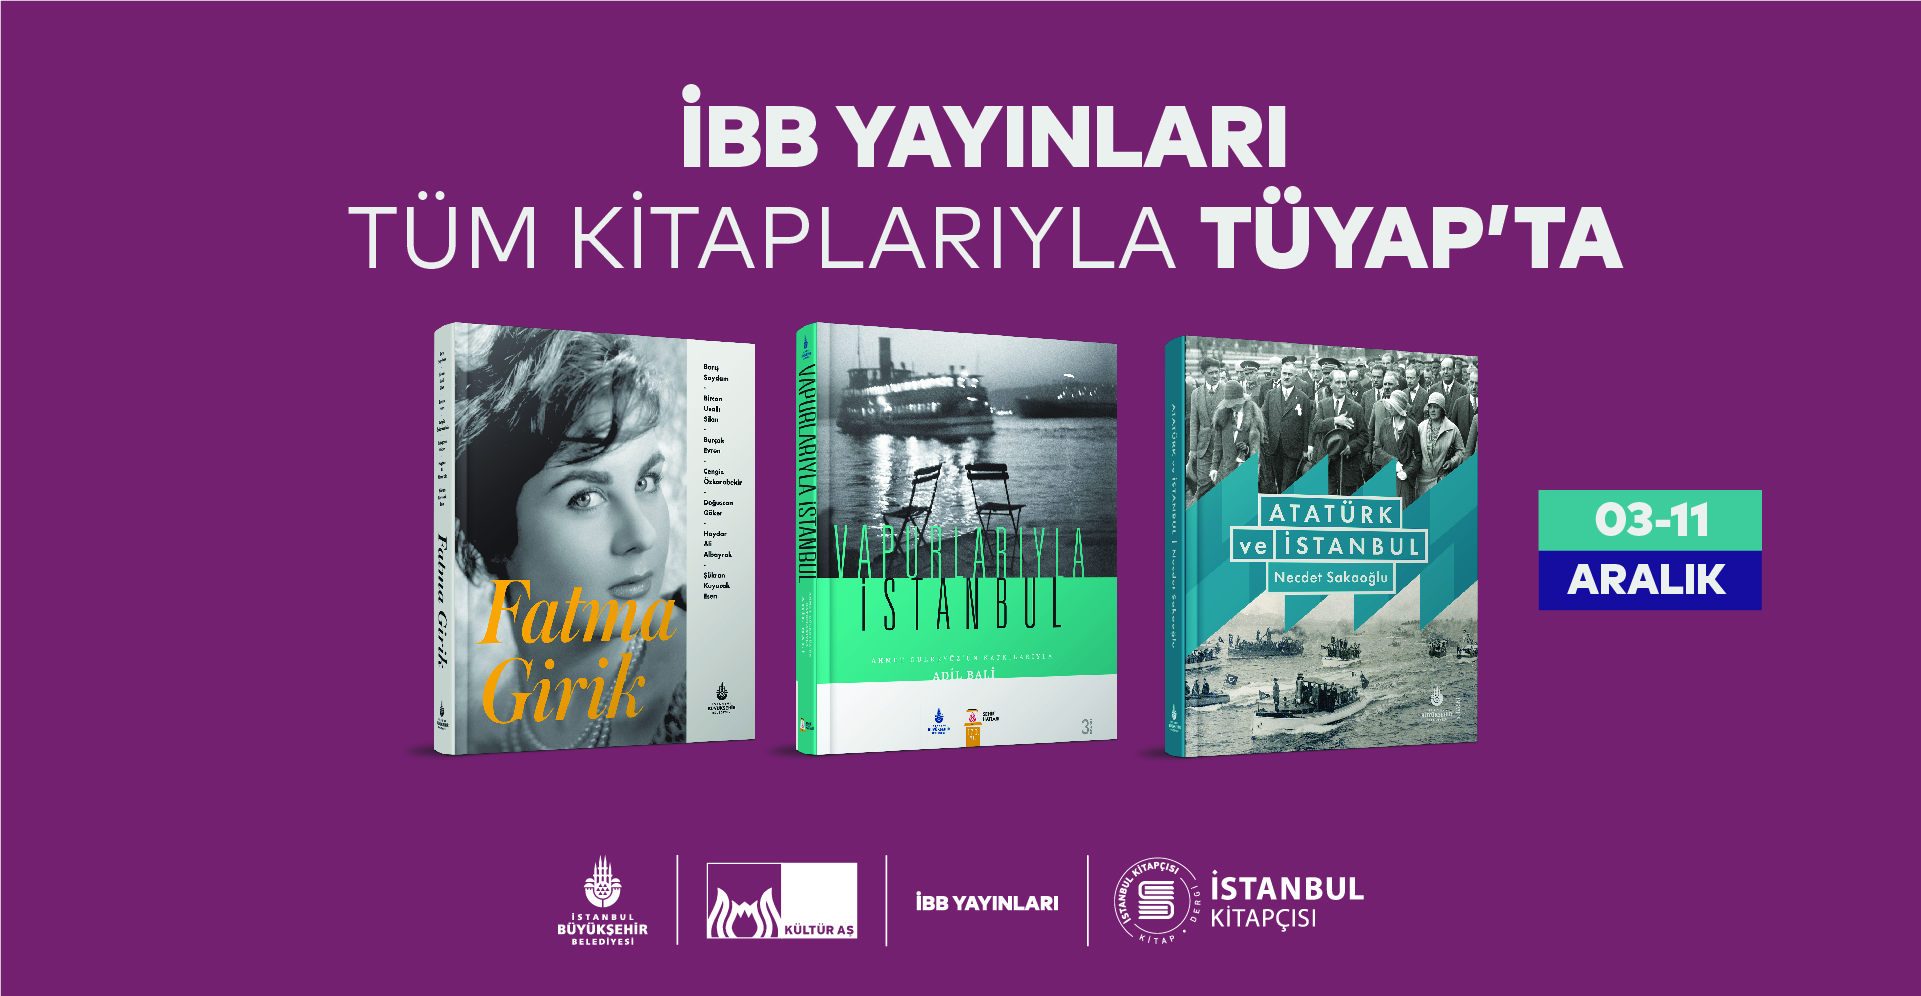 İstanbul Büyükşehir Belediyesi Yayınları bütün kitaplarıyla Tüyap 39. Uluslararası İstanbul Kitap Fuarı’nda!